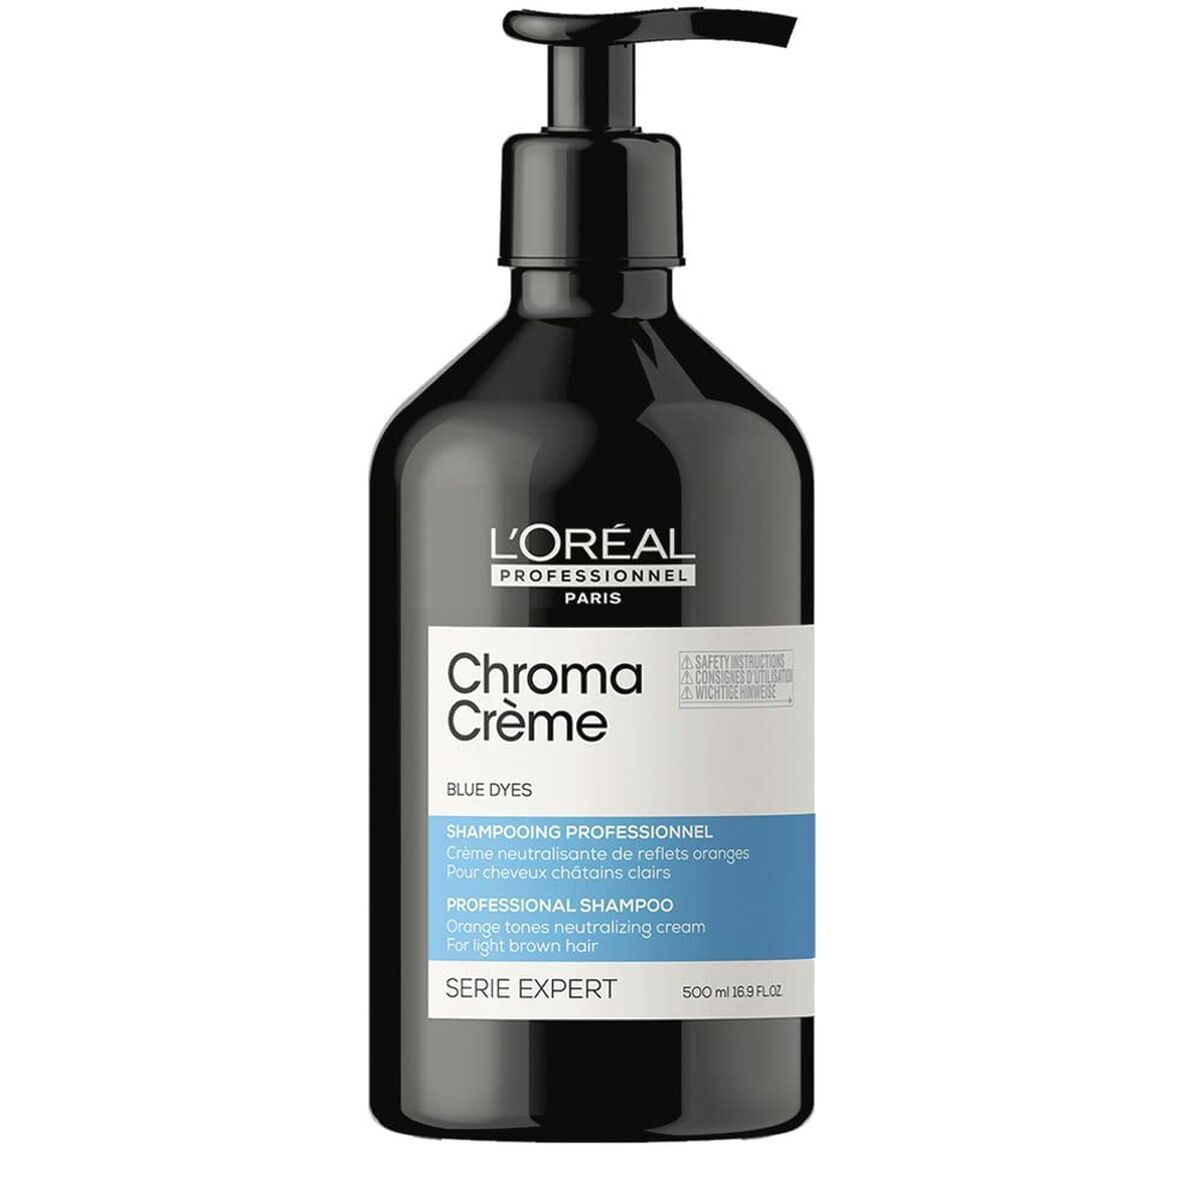 Colour Neutralising Shampoo L'Oreal Professionnel Paris Chroma Crème Chestnut hair (500 ml) | L'Oreal Professionnel Paris | Aylal Beauty